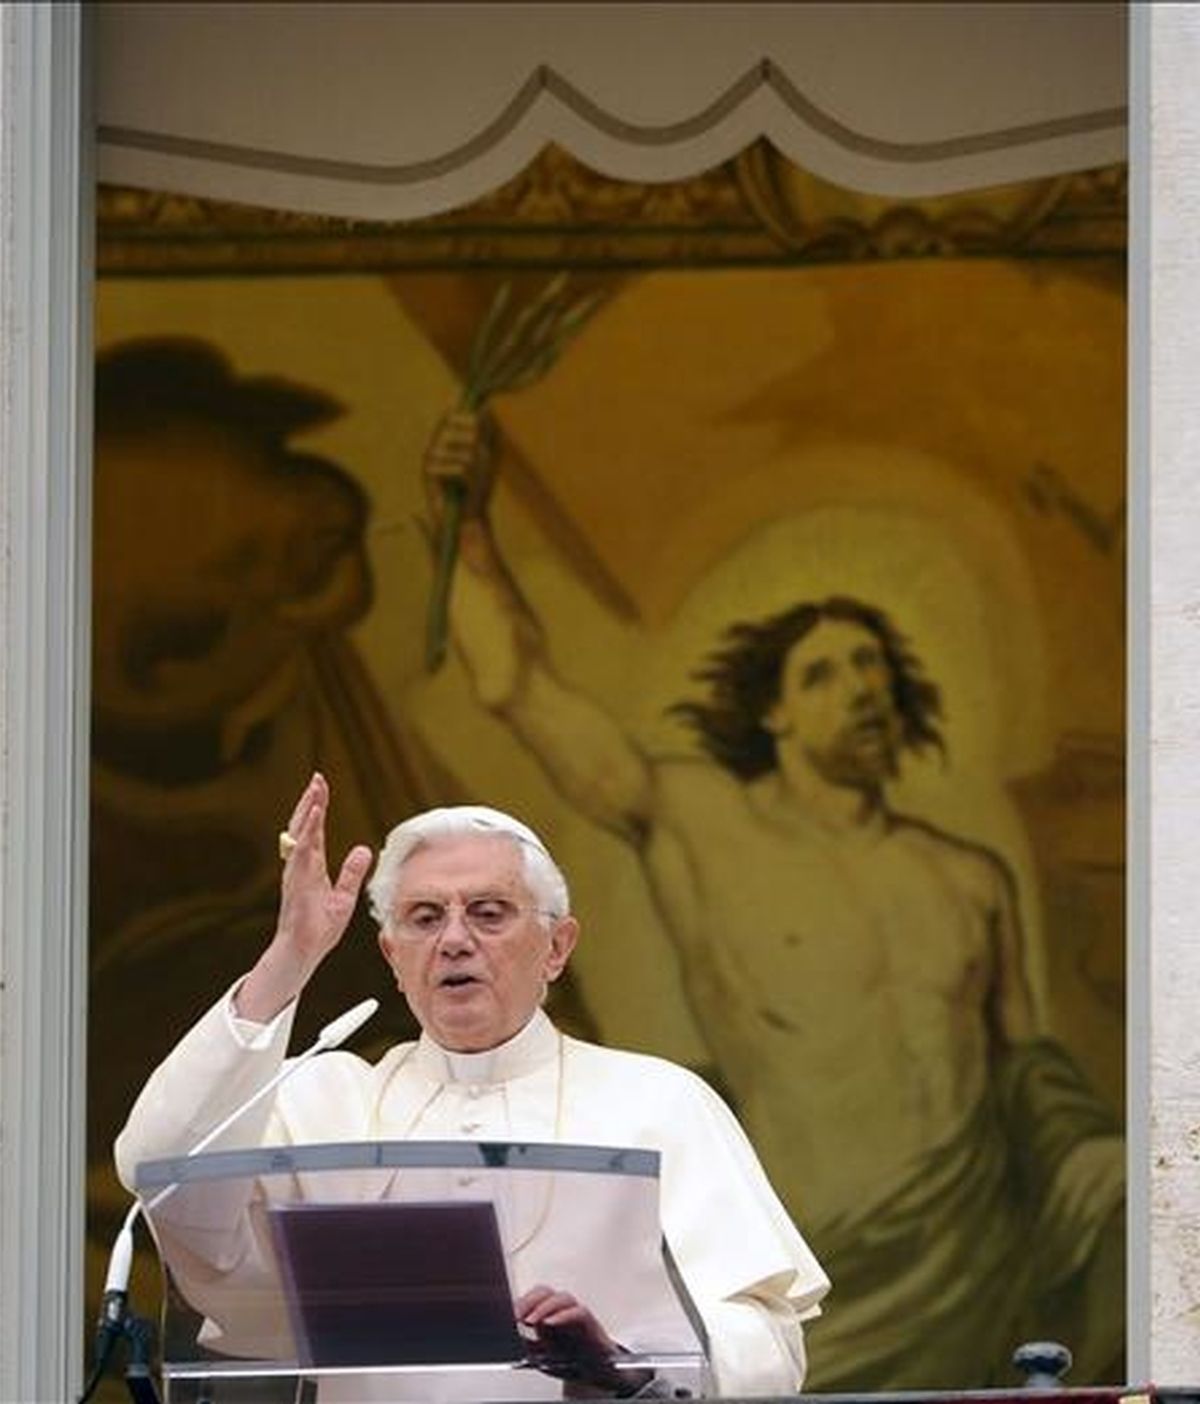 El Papa Benedicto XVI saluda a los fieles desde la residencia de verano de los papas en Castel Gandolfo durante el rezo del ángelus hoy. EFE